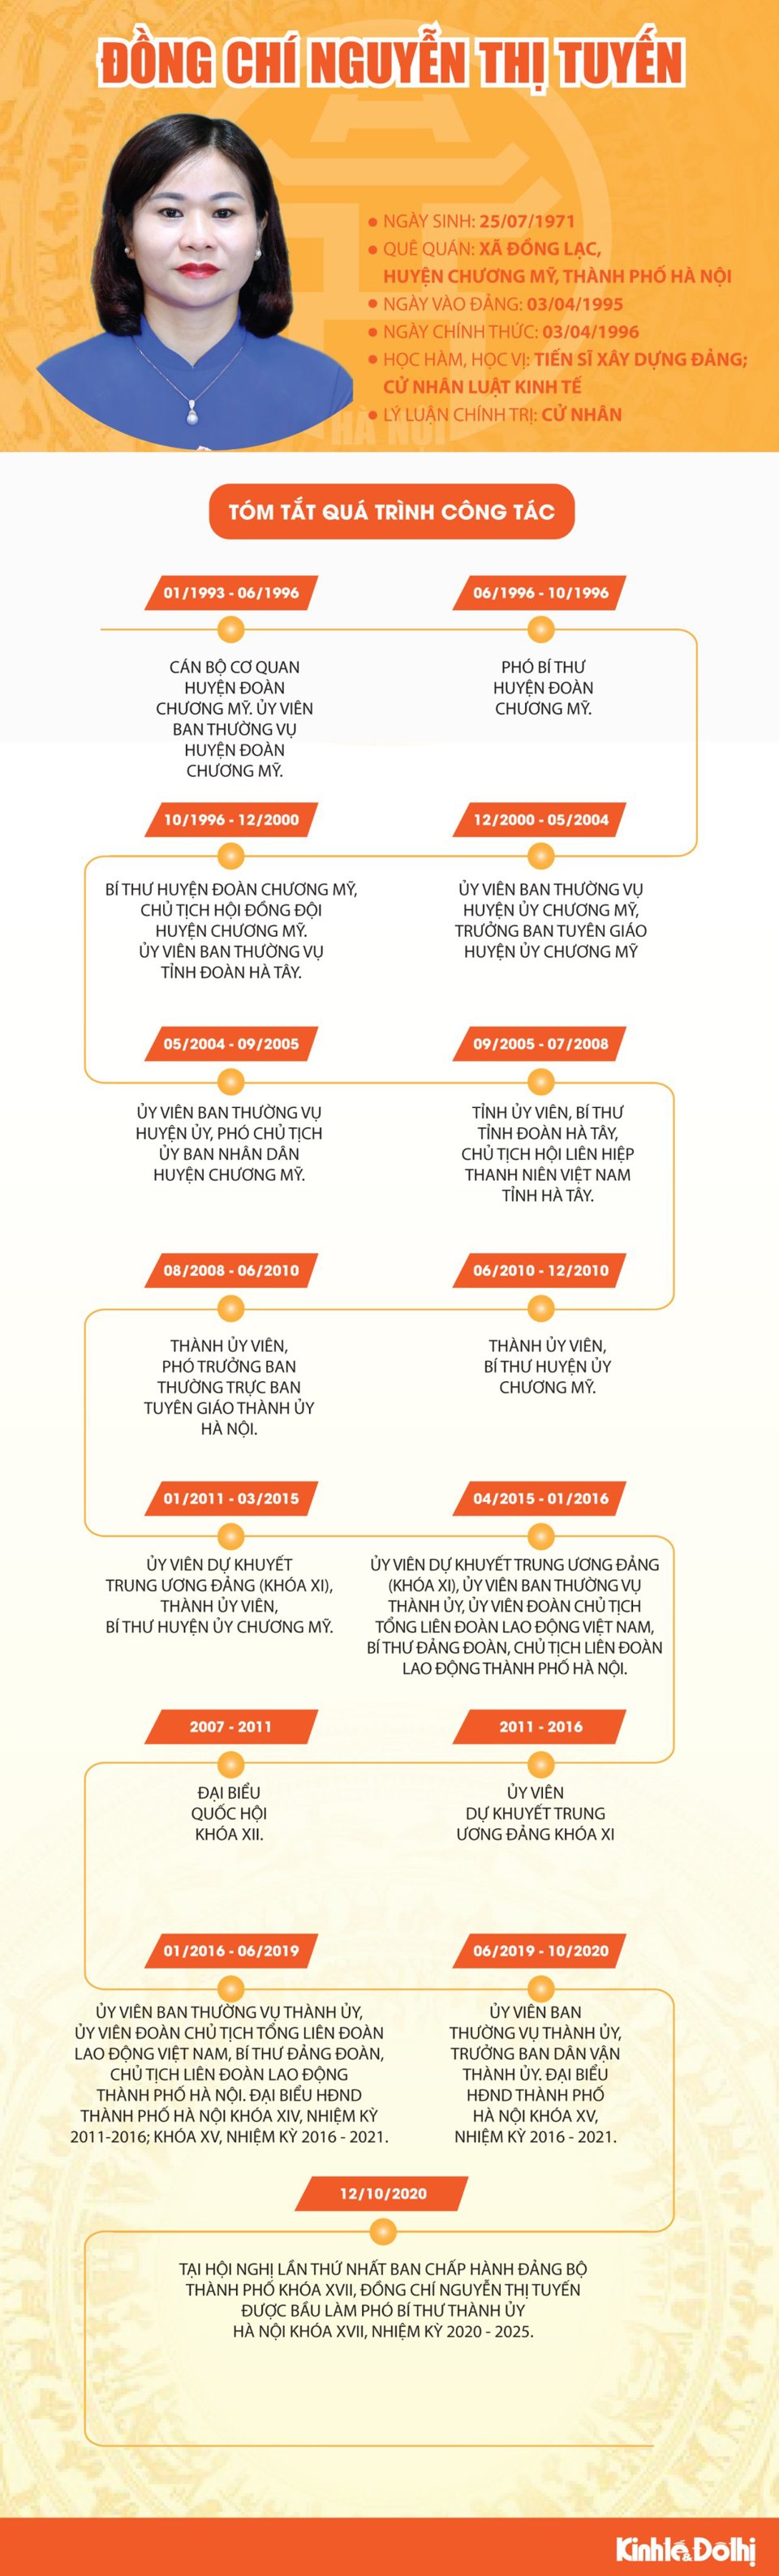 [Infographic] Tóm tắt quá trình công tác của Phó Bí thư Thành ủy Hà Nội Nguyễn Thị Tuyến - Ảnh 1